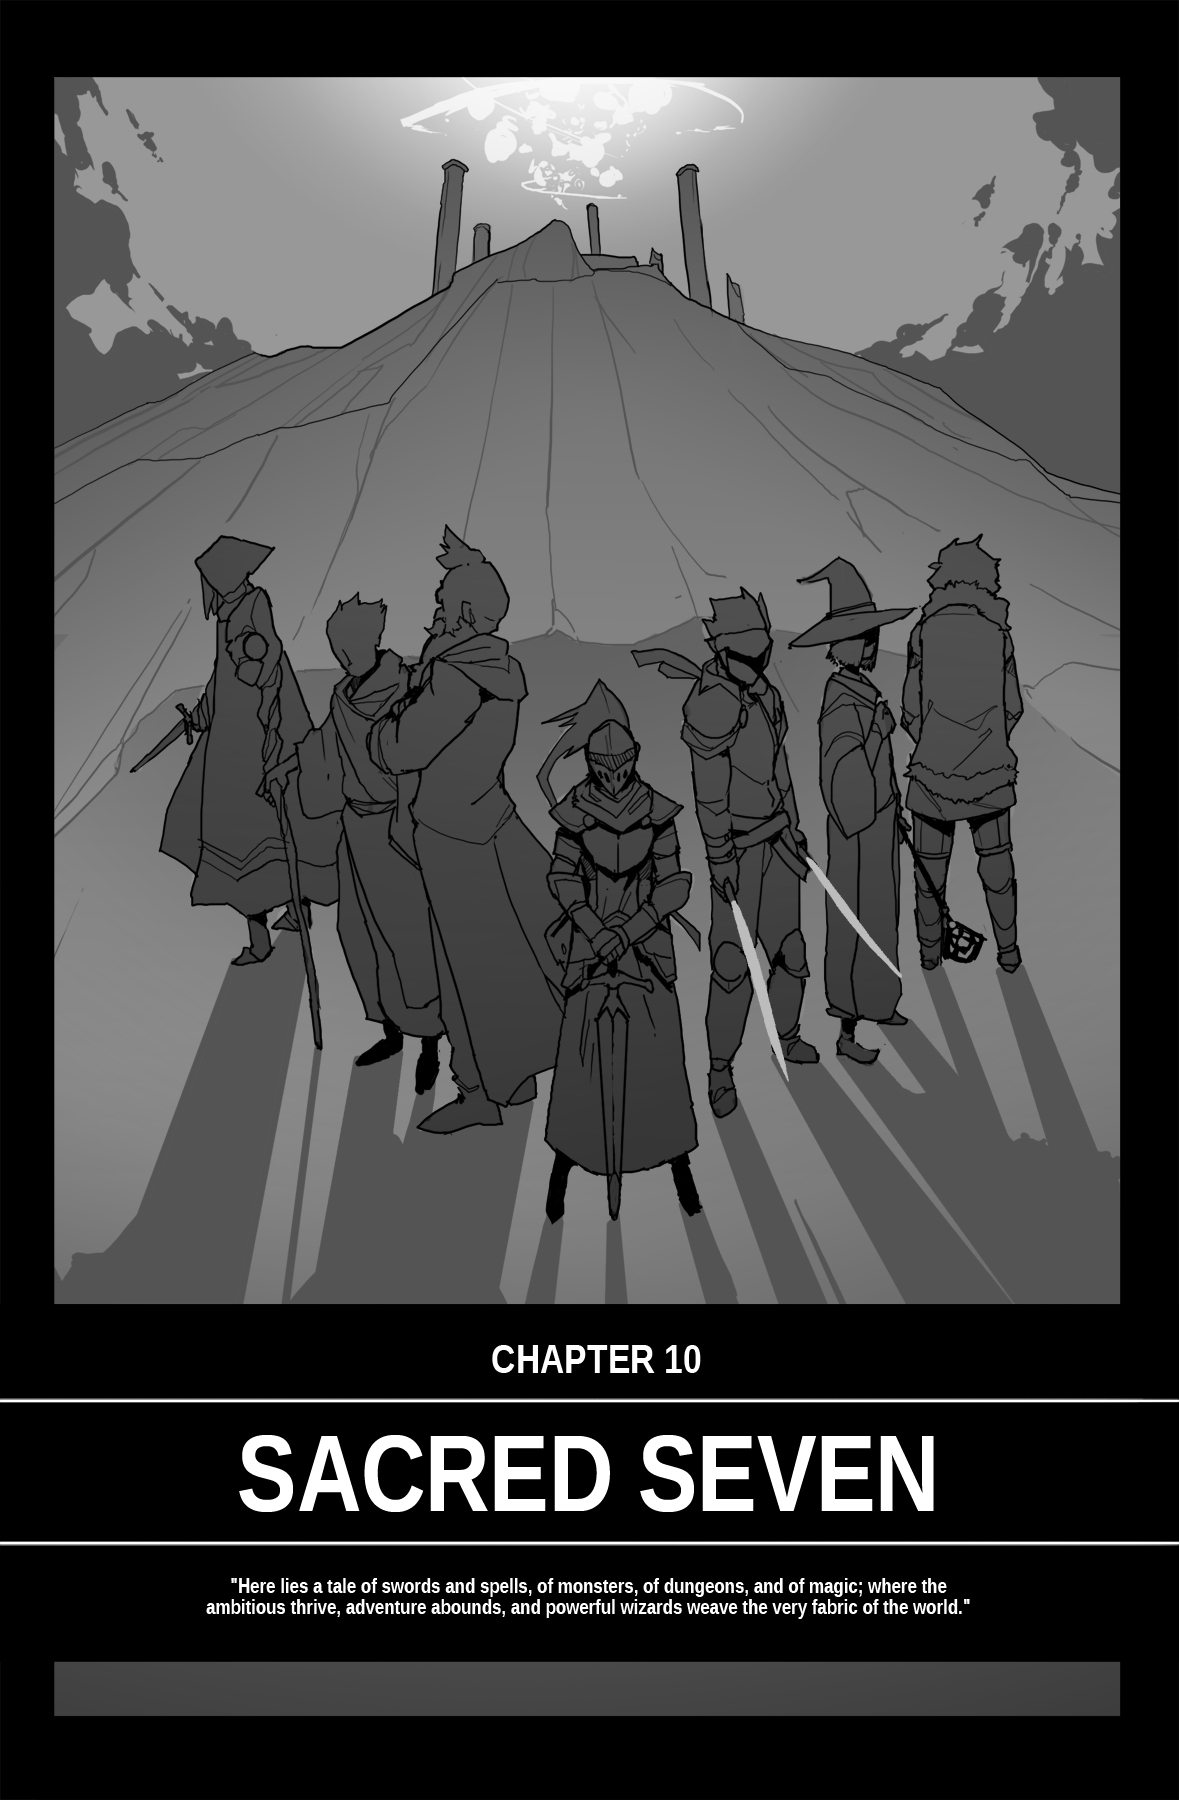 Spellcross Ch. 10 Sacred Seven